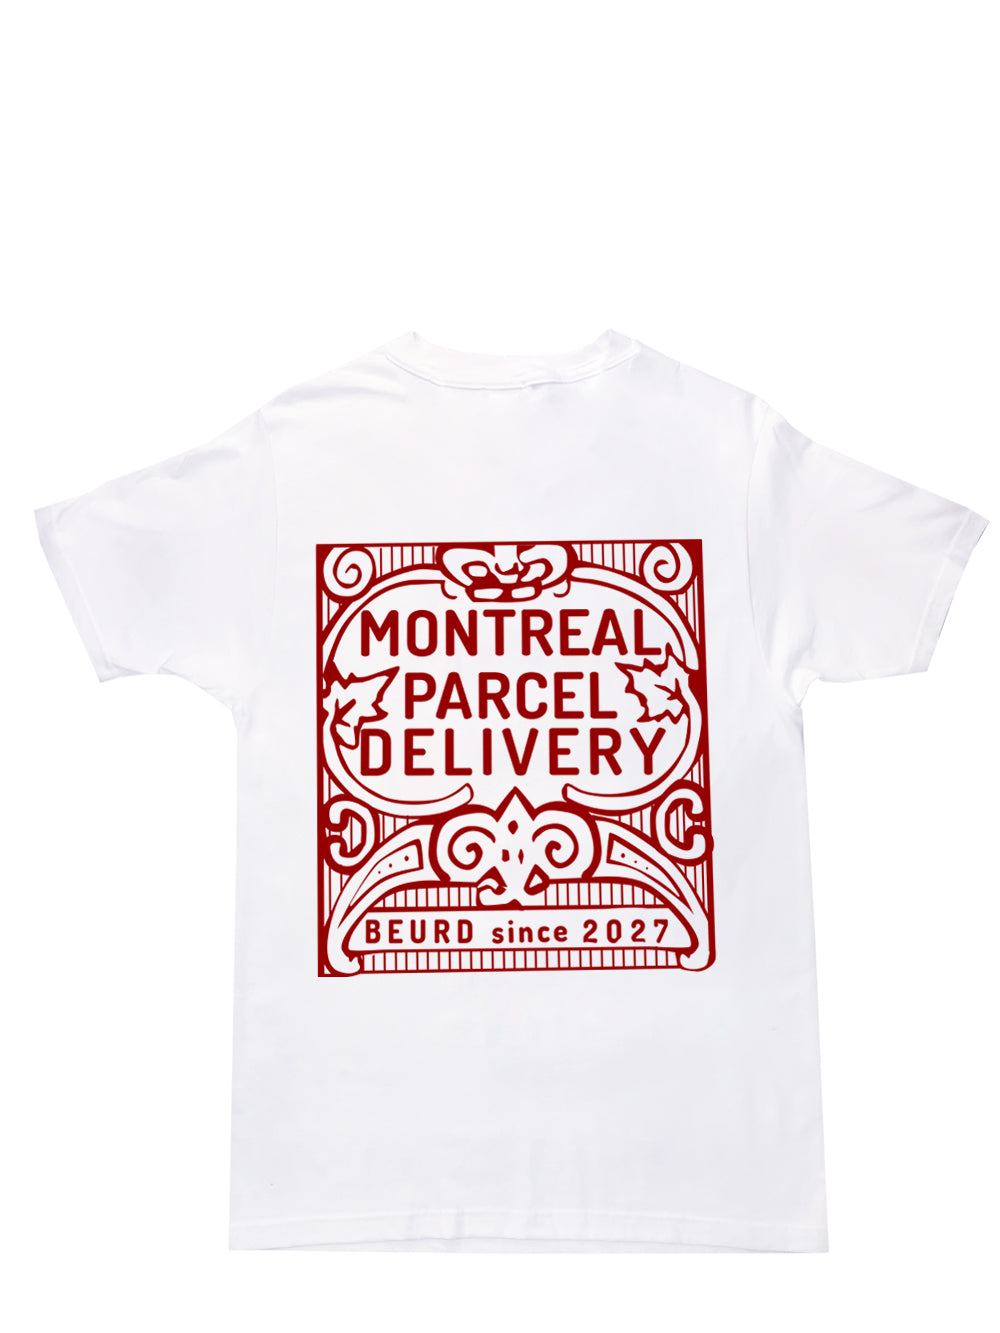 T-shirt blanc avec imprimé rouge « Montreal Parcel Delivery ». Imprimé et dessiné par Beurd à Montréal.